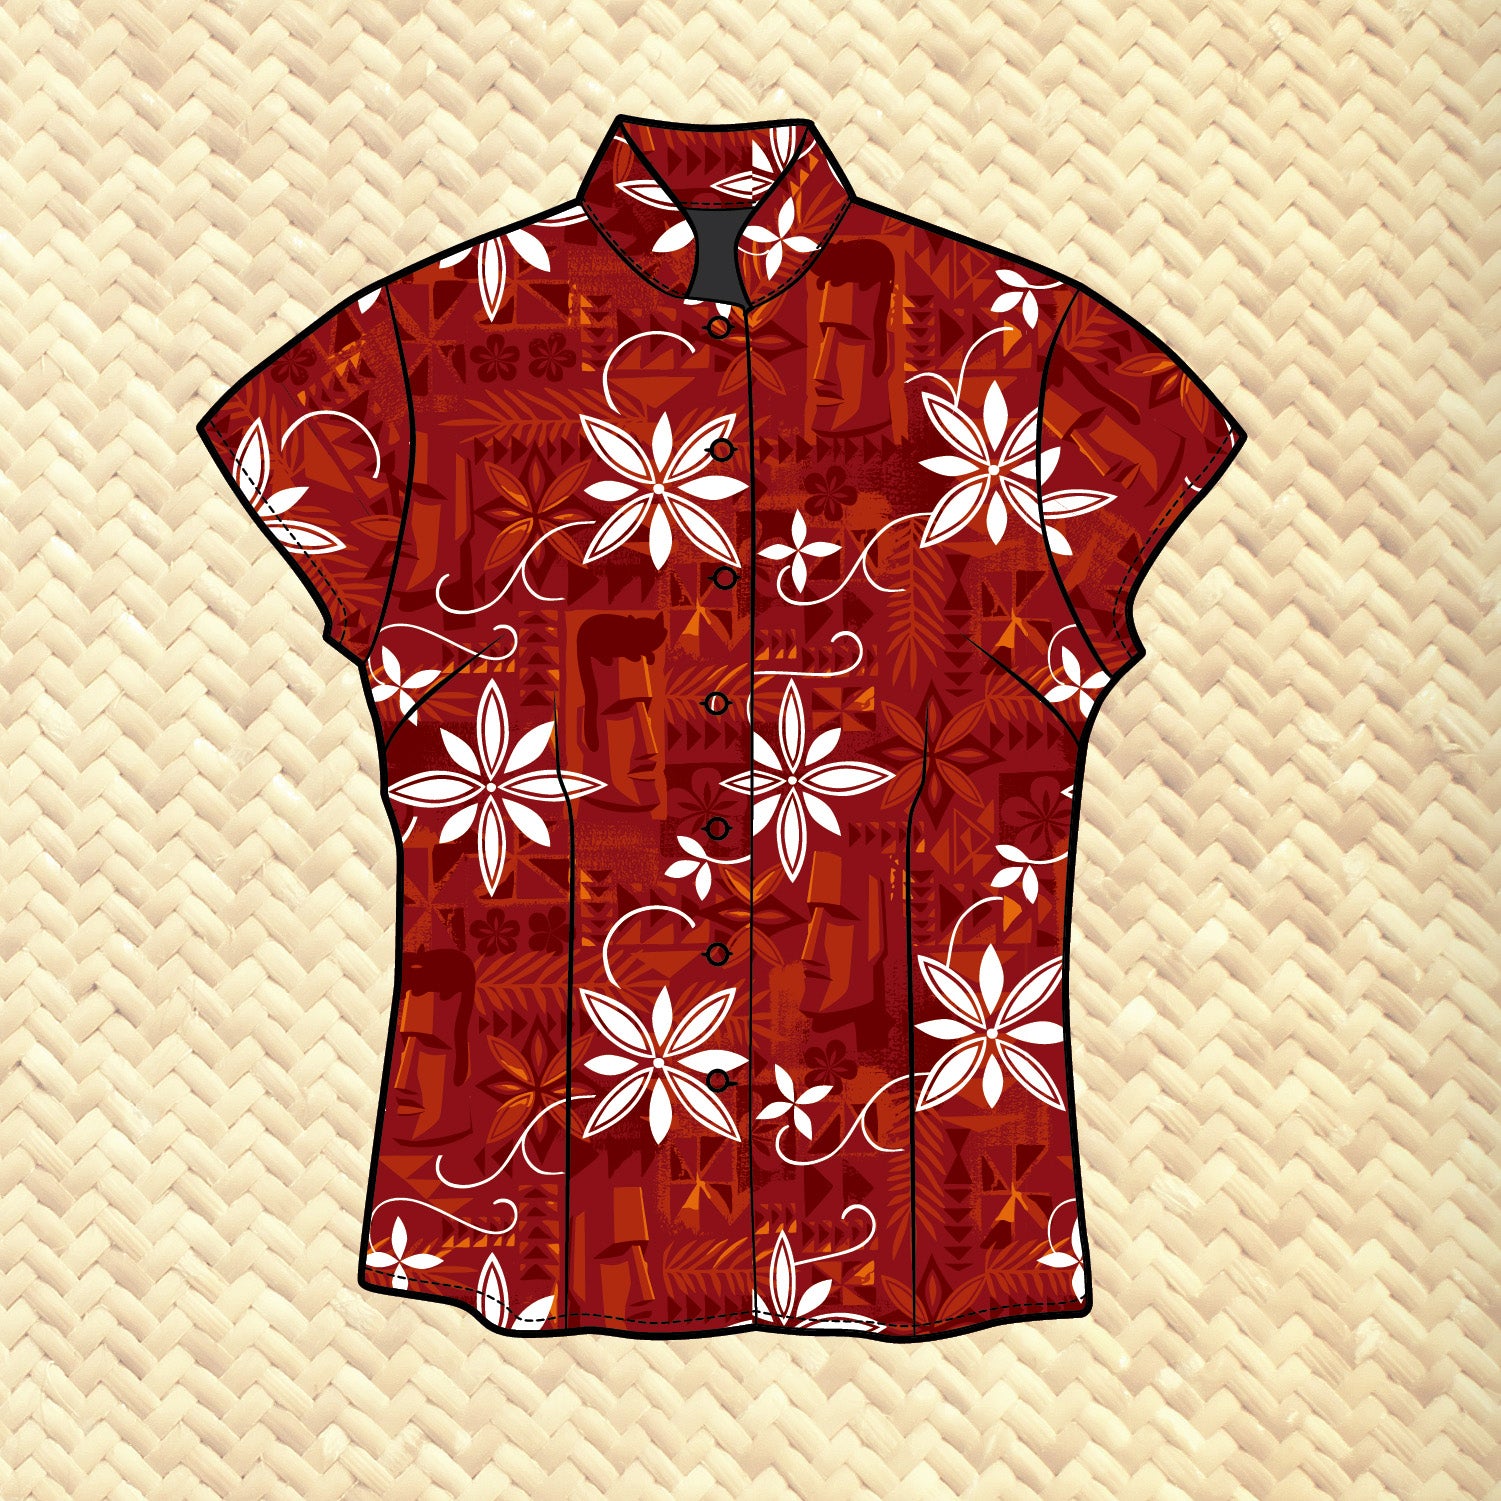 Women's Blue Lagoon Hawaiian Shirt